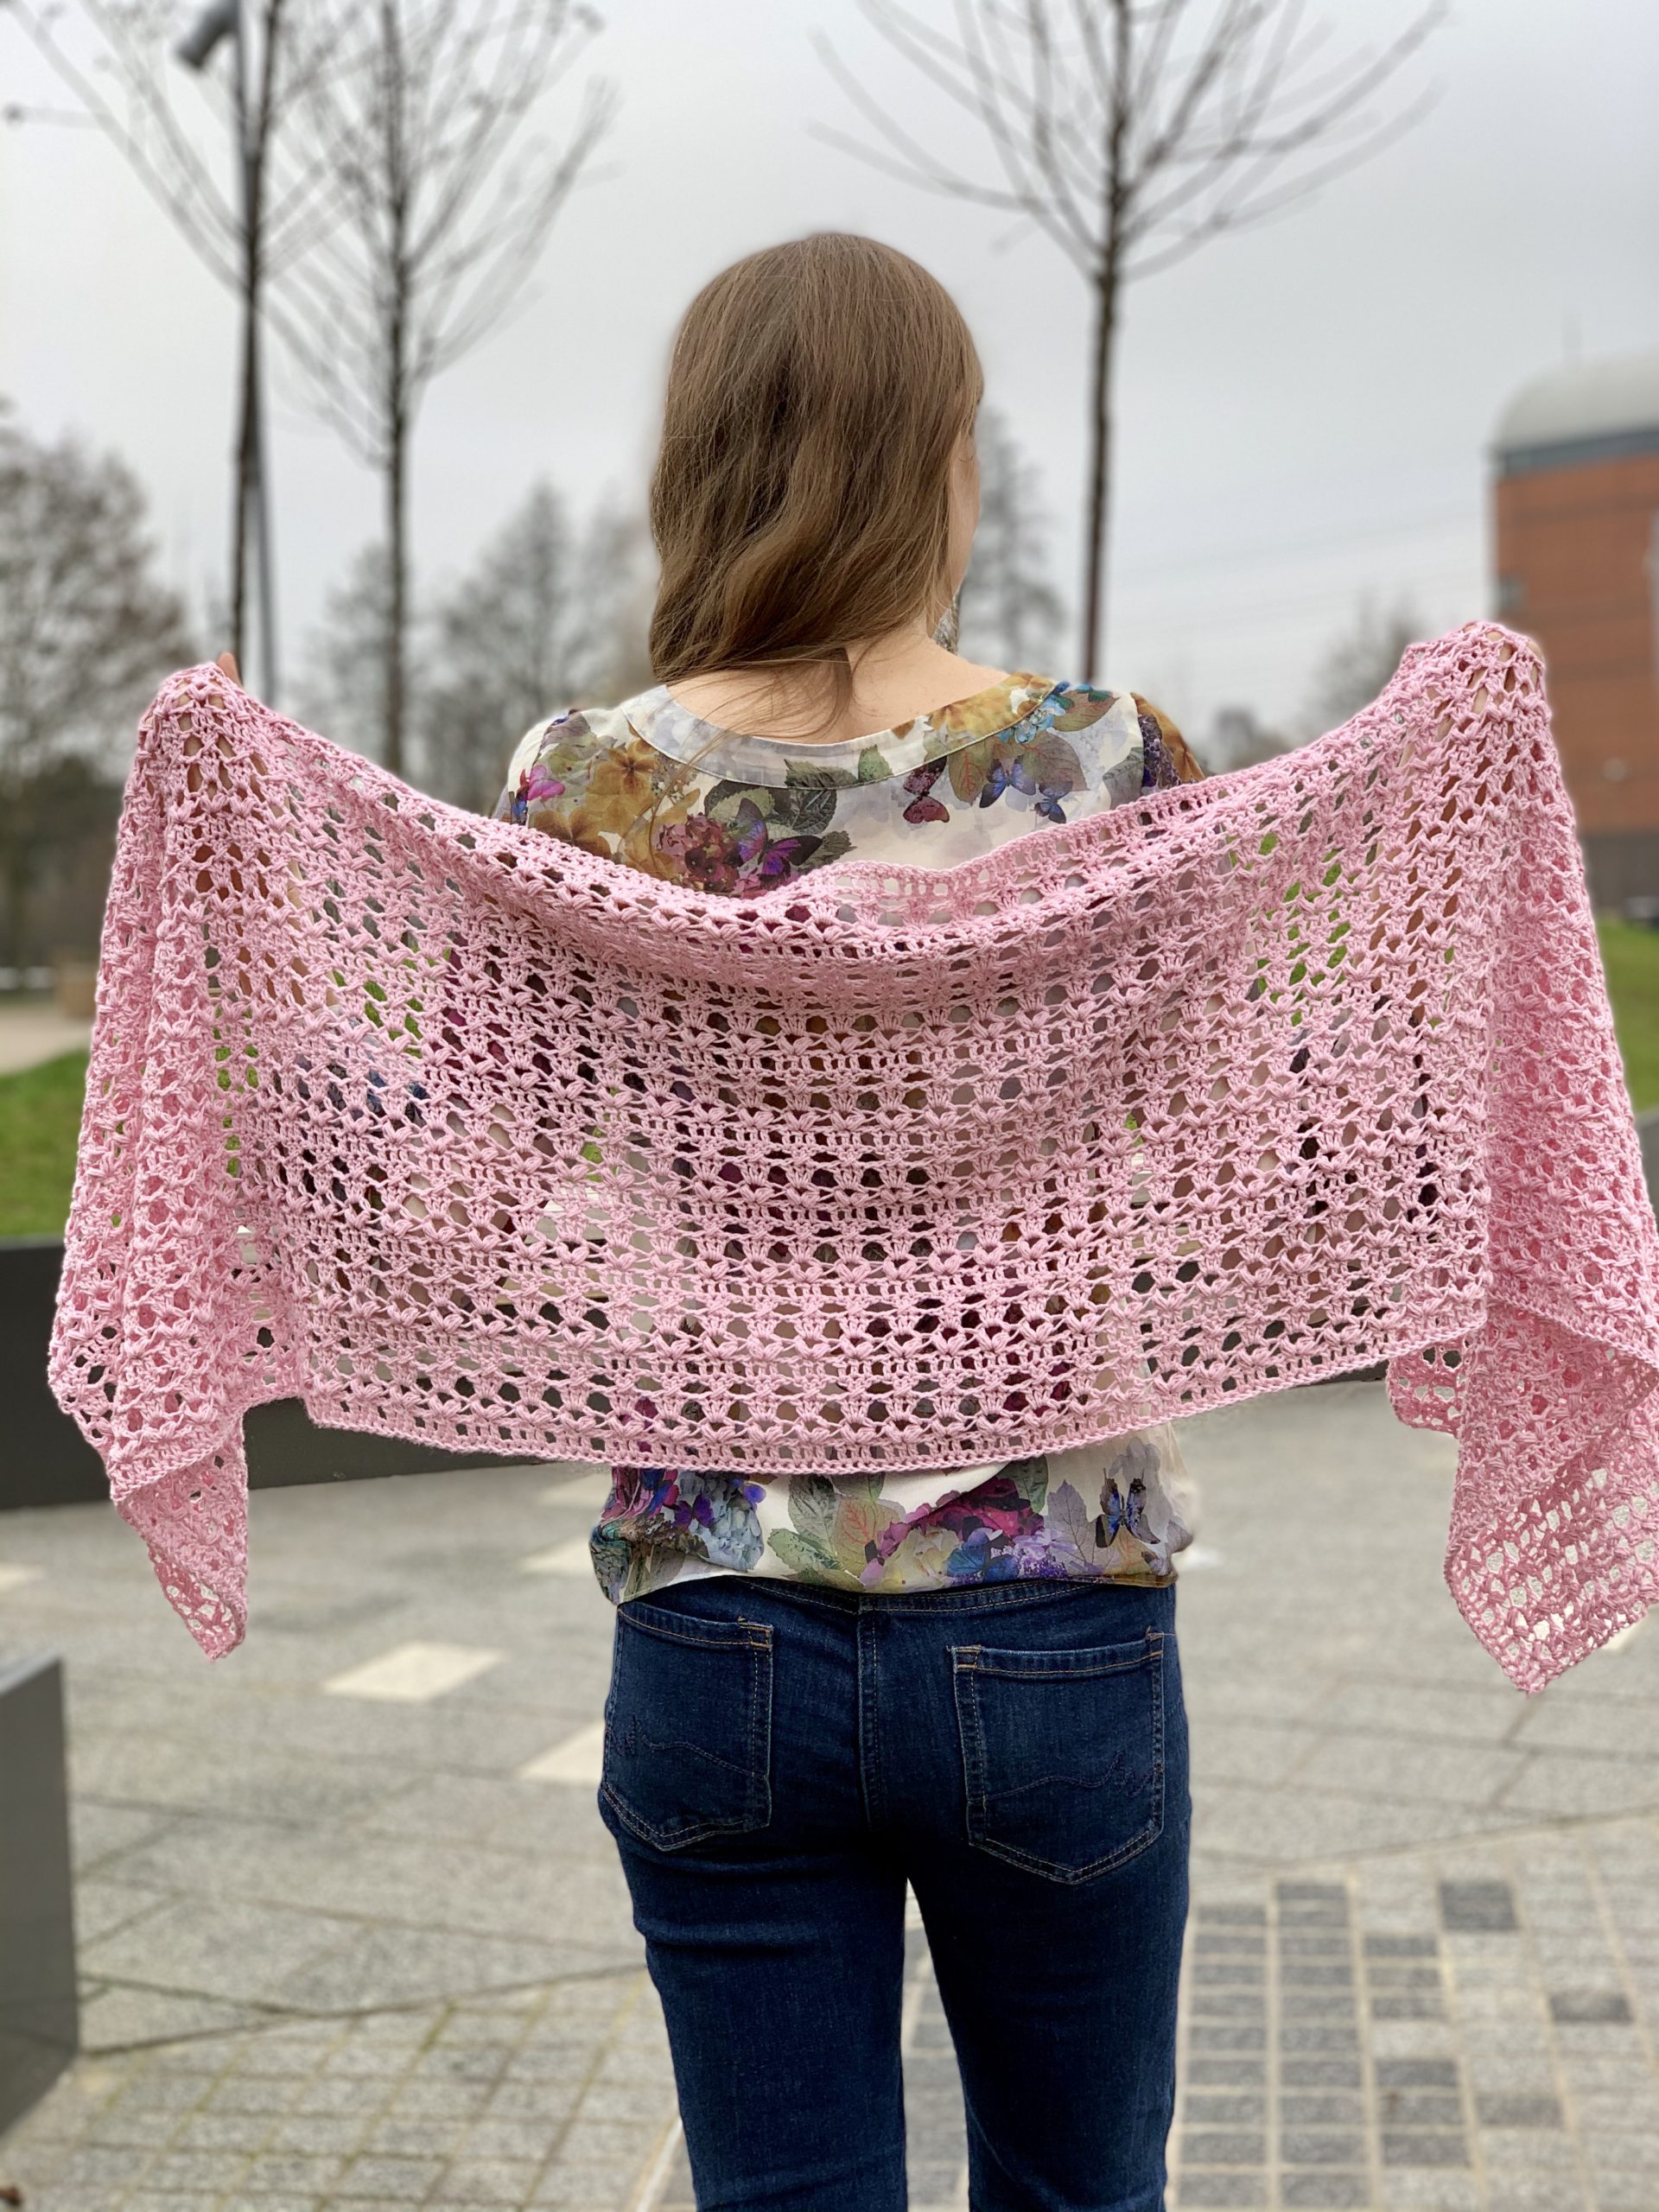 Cute New FREE Crochet Top Pattern ideas for New Season 2019 - Beauty Crochet  Patterns!